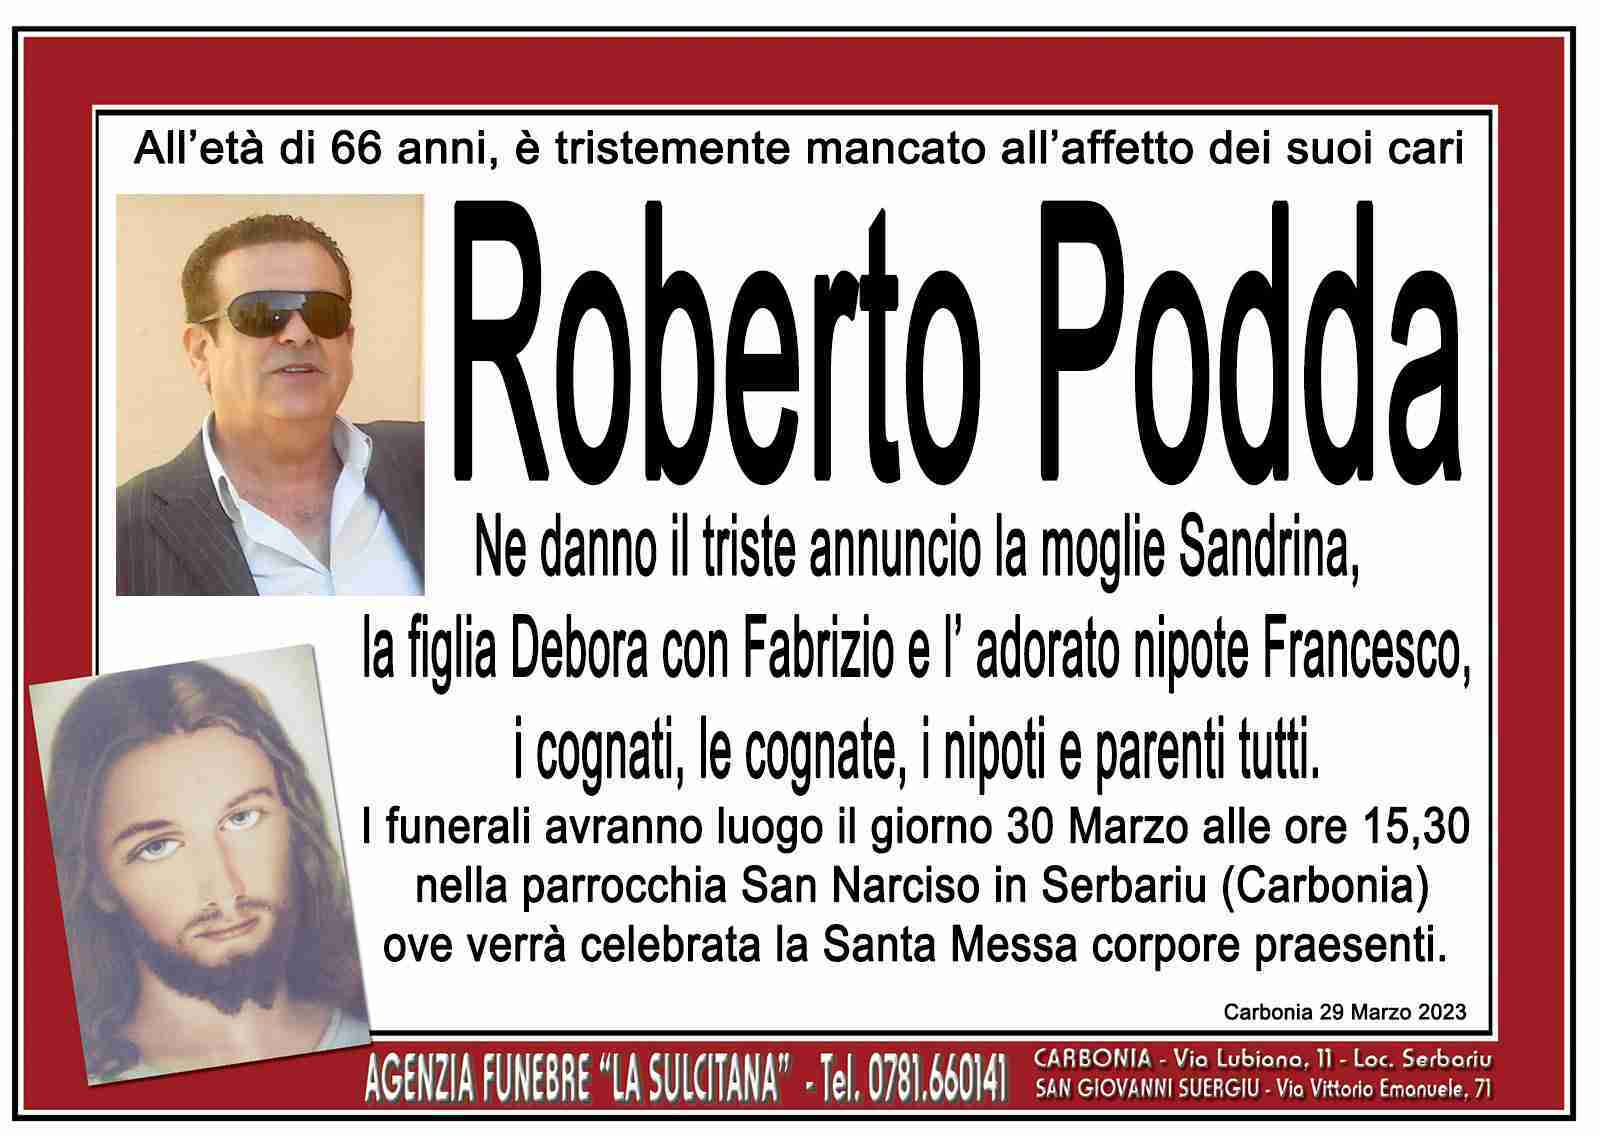 Roberto Podda